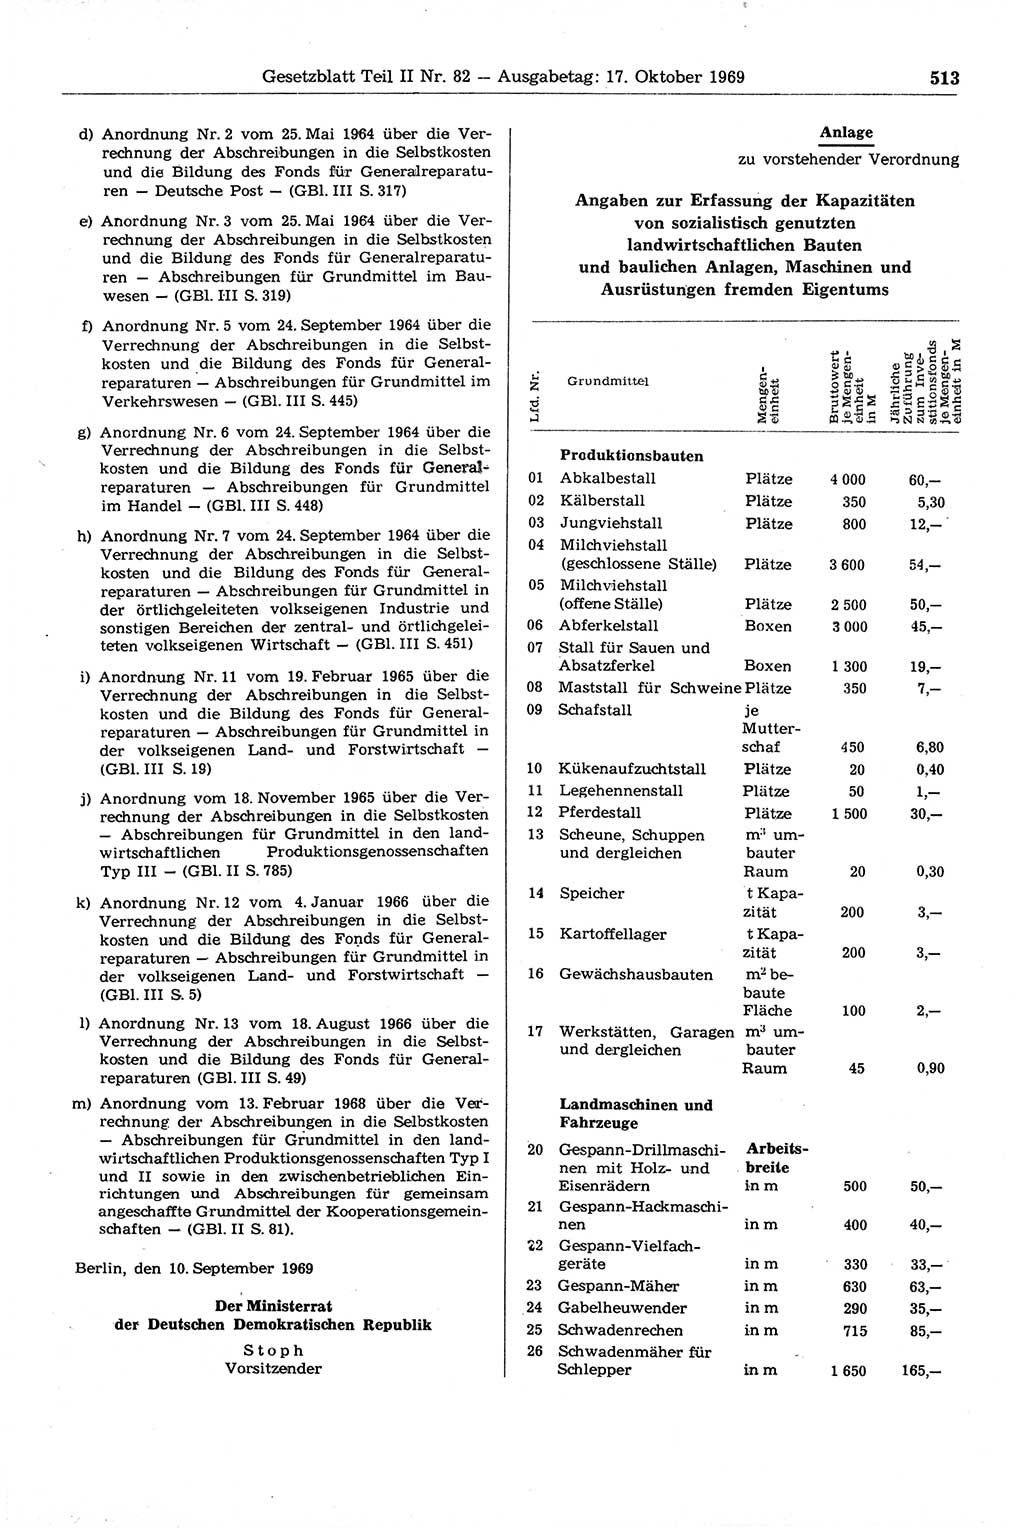 Gesetzblatt (GBl.) der Deutschen Demokratischen Republik (DDR) Teil ⅠⅠ 1969, Seite 513 (GBl. DDR ⅠⅠ 1969, S. 513)